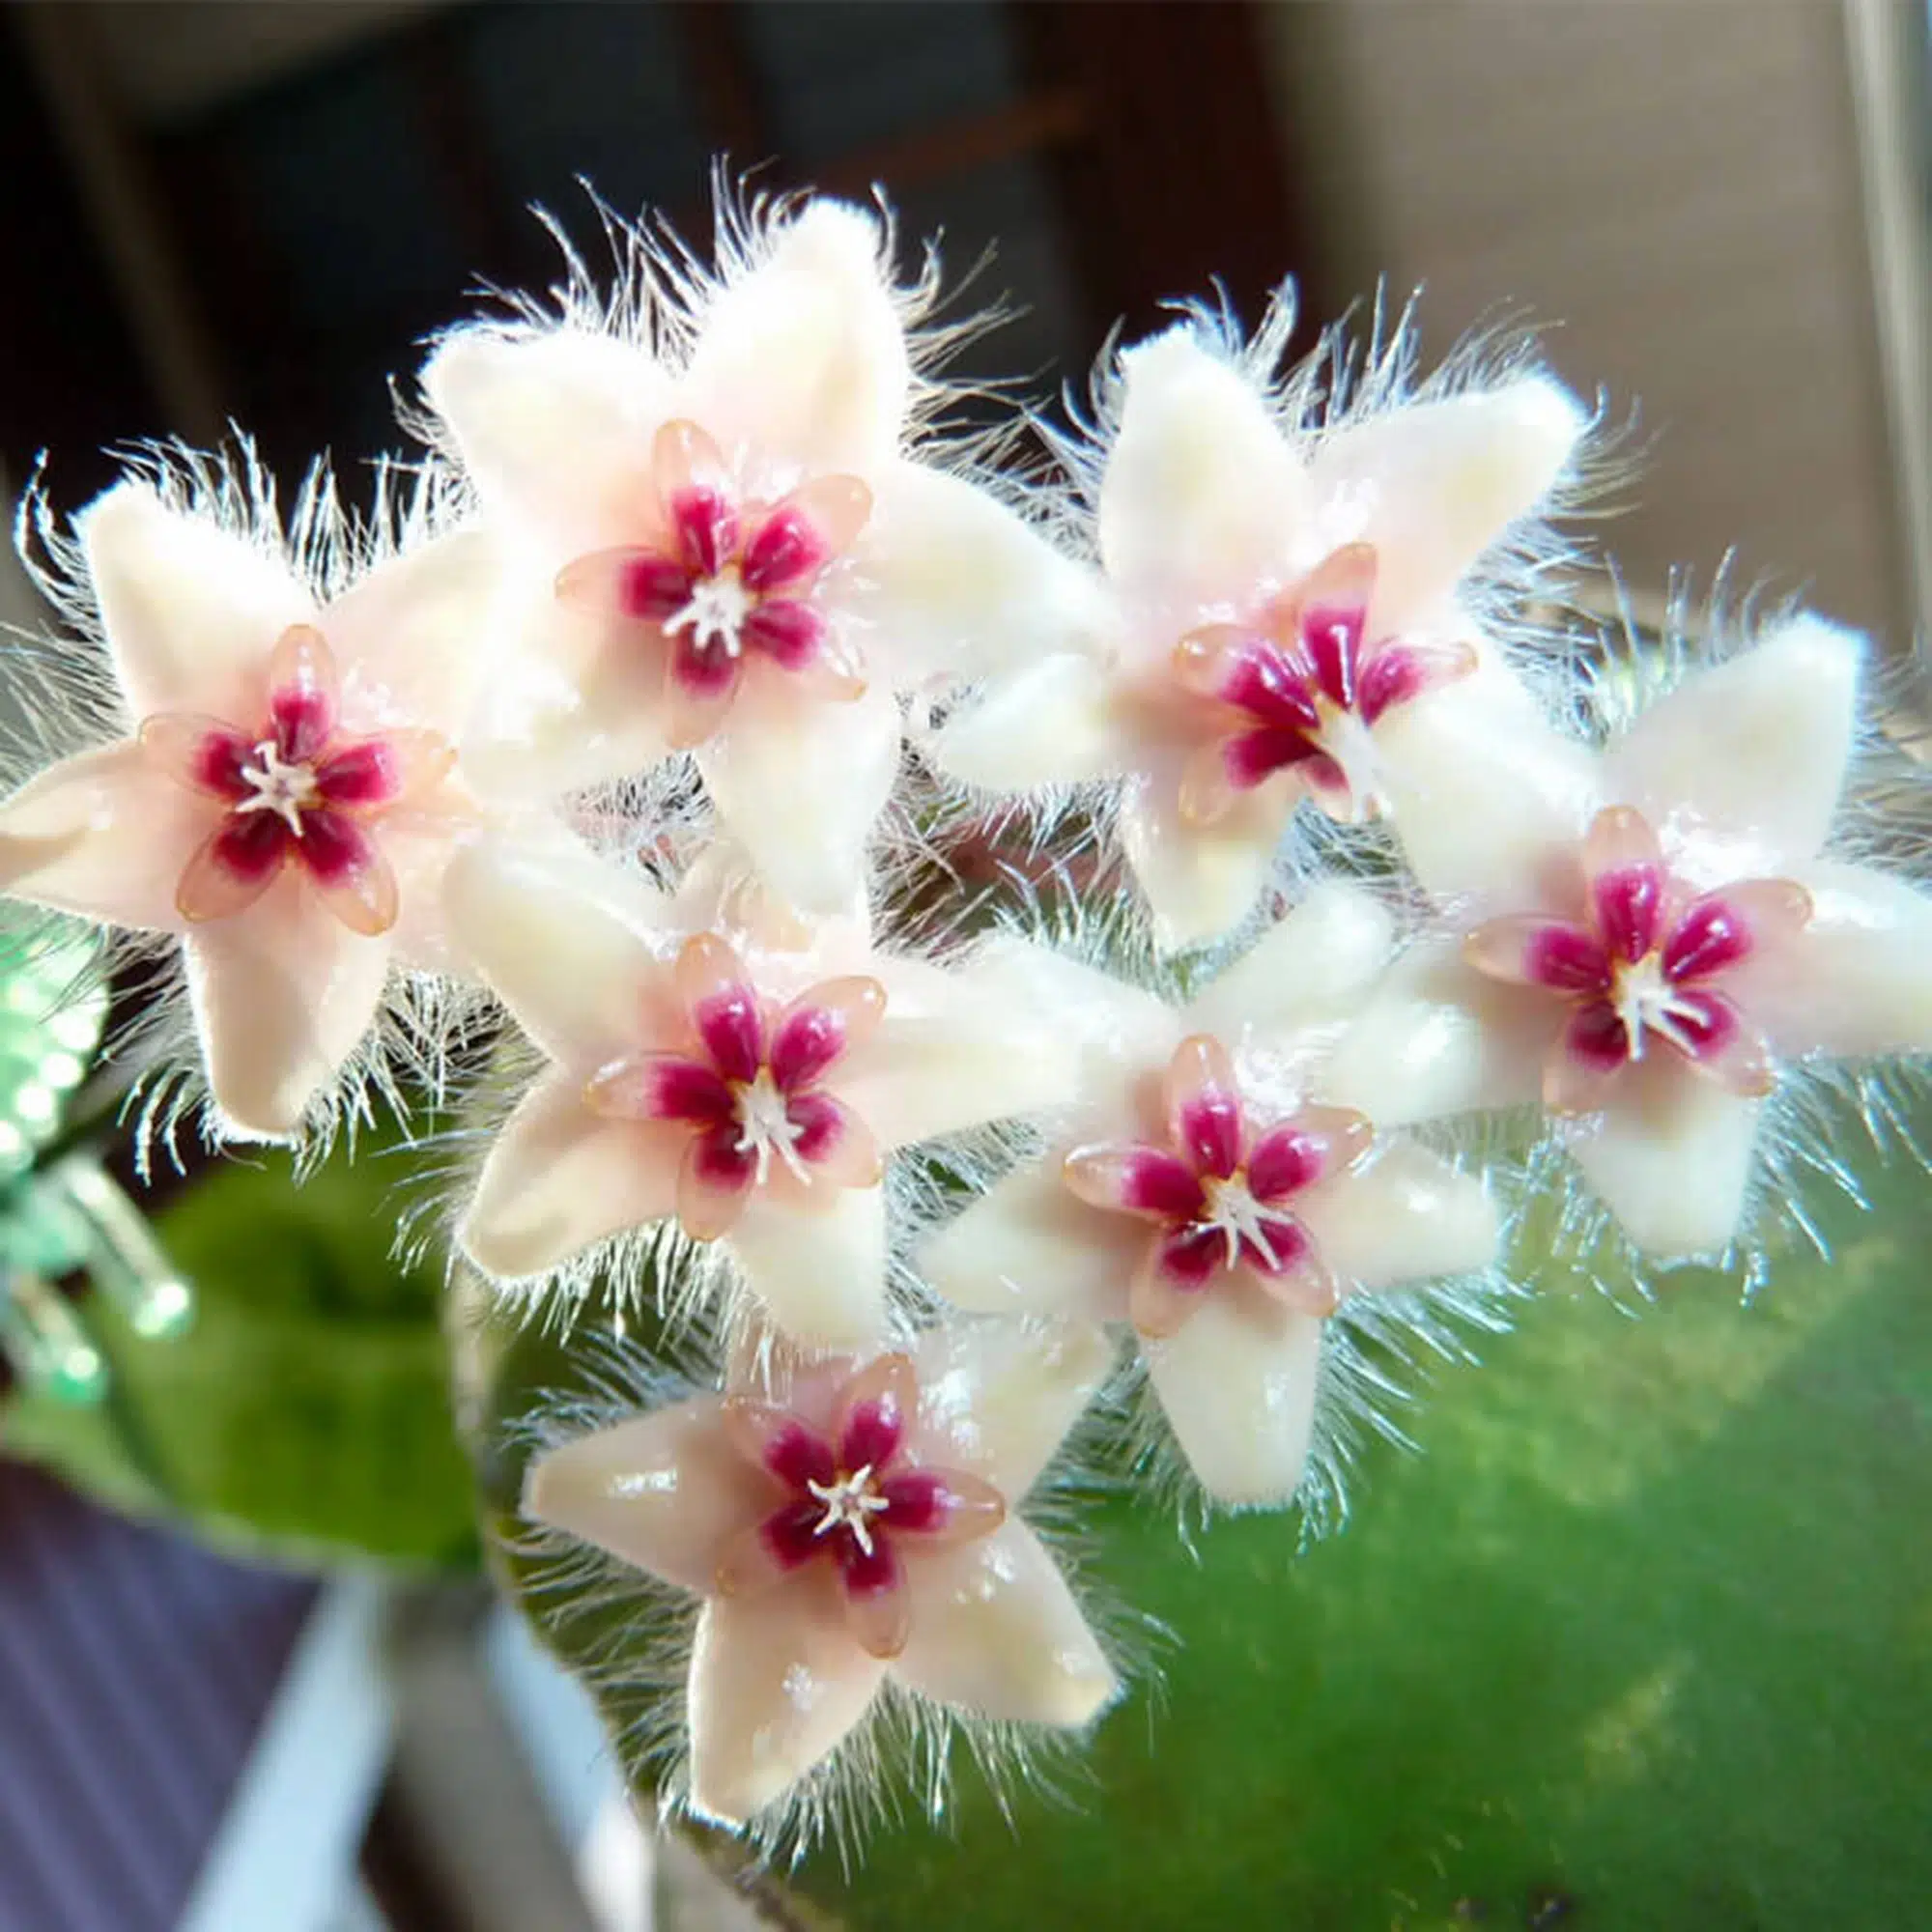 Hoya caudata flowers